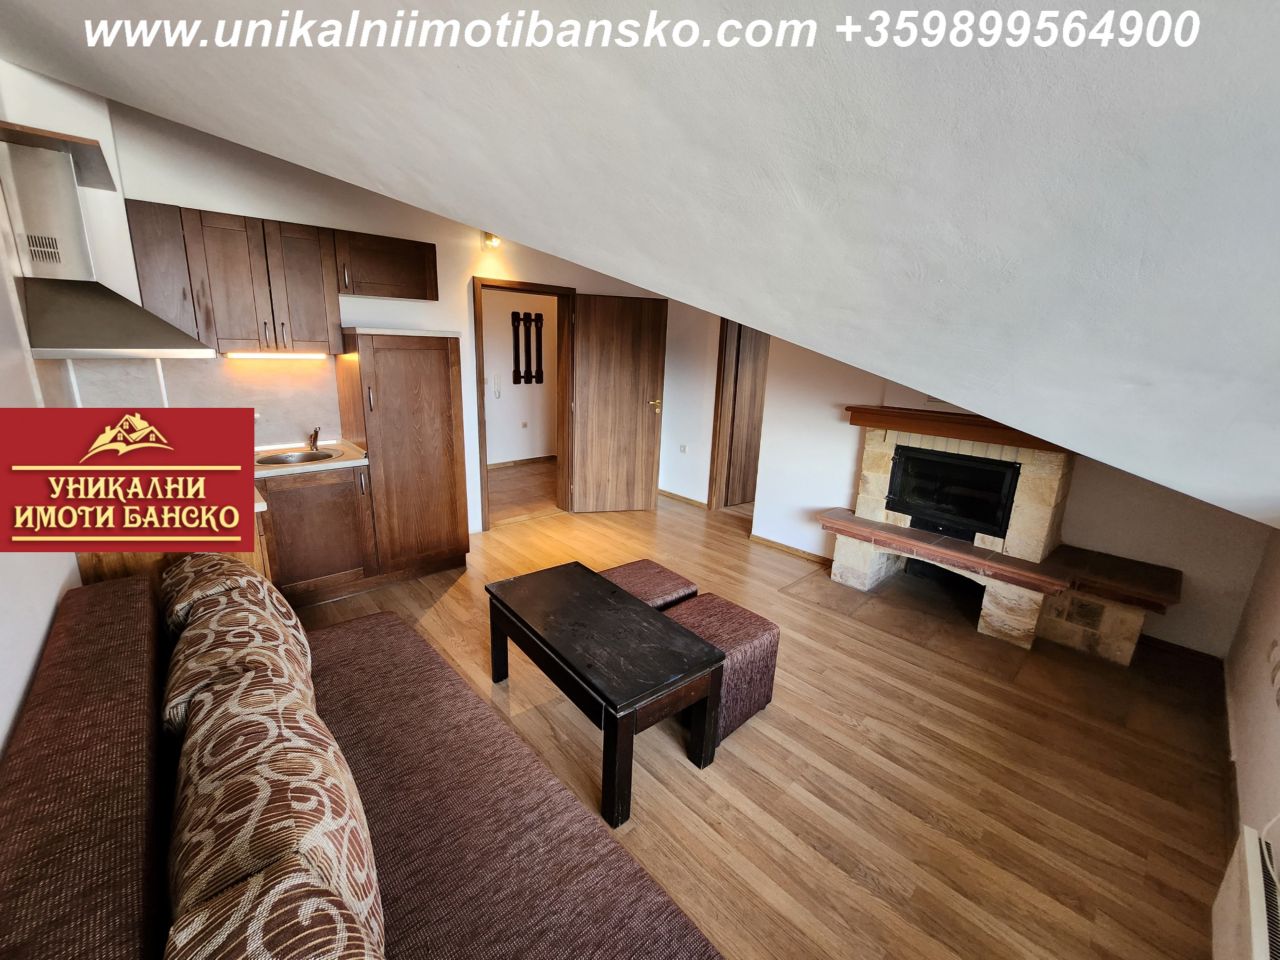 Apartment in Bansko, Bulgarien, 73 m2 - Foto 1